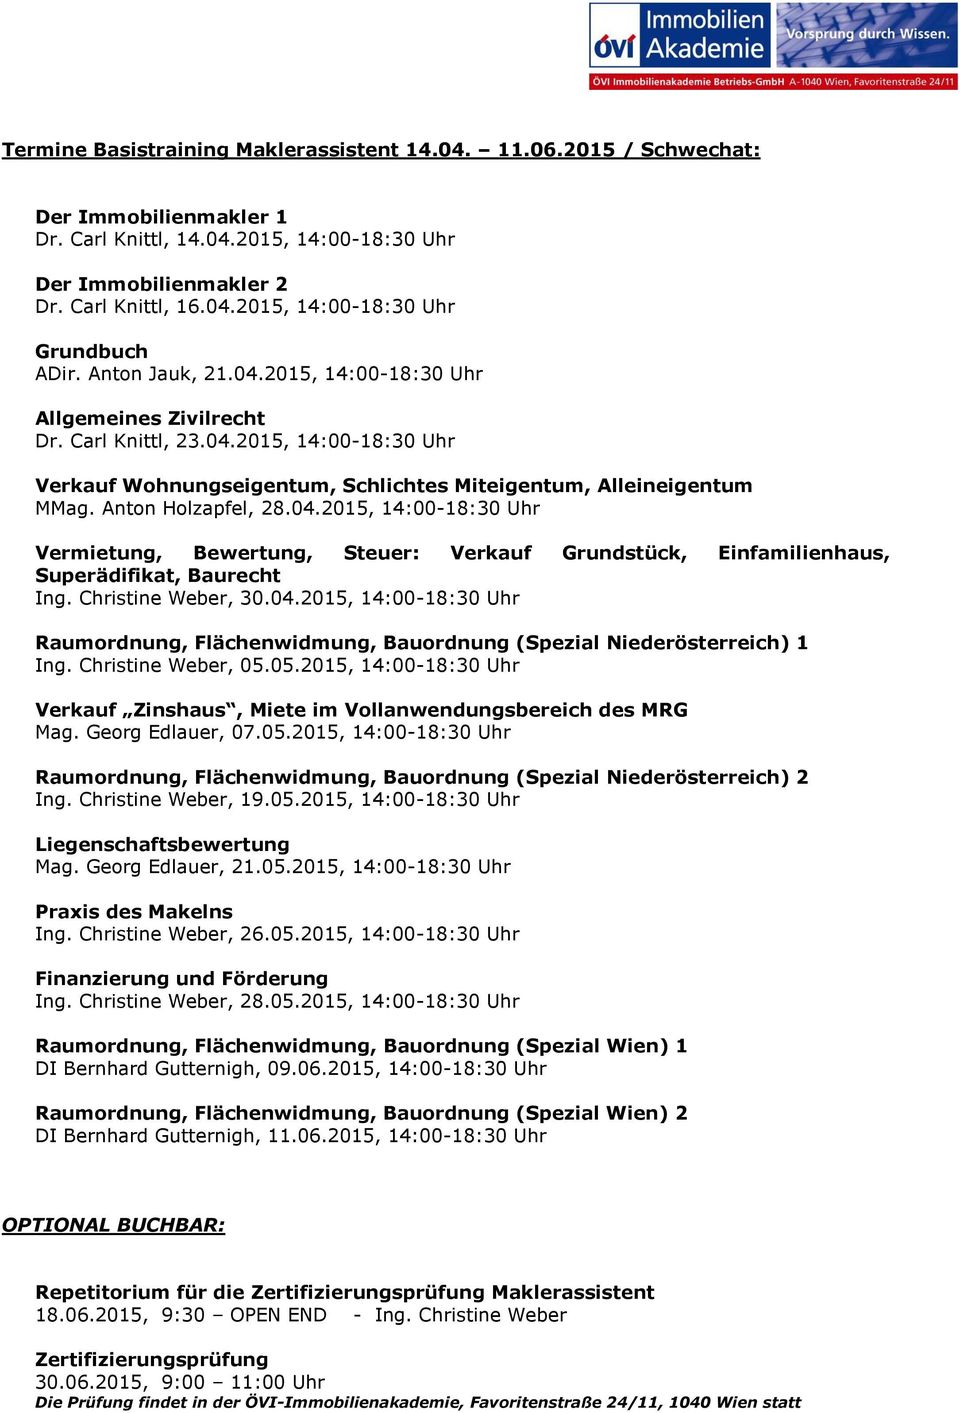 Christine Weber, 30.04.2015, 14:00-18:30 Uhr Raumrdnung, Flächenwidmung, Baurdnung (Spezial Niederösterreich) 1 Ing. Christine Weber, 05.